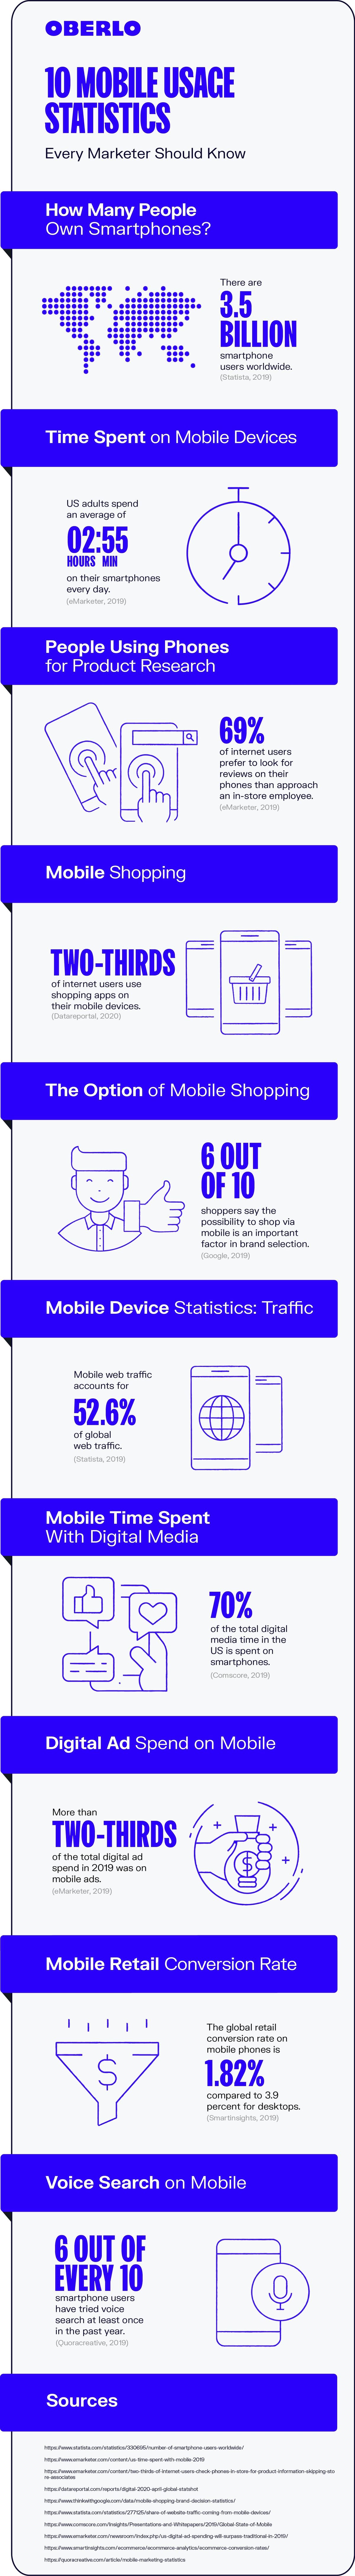 estadísticas de uso móvil 2020